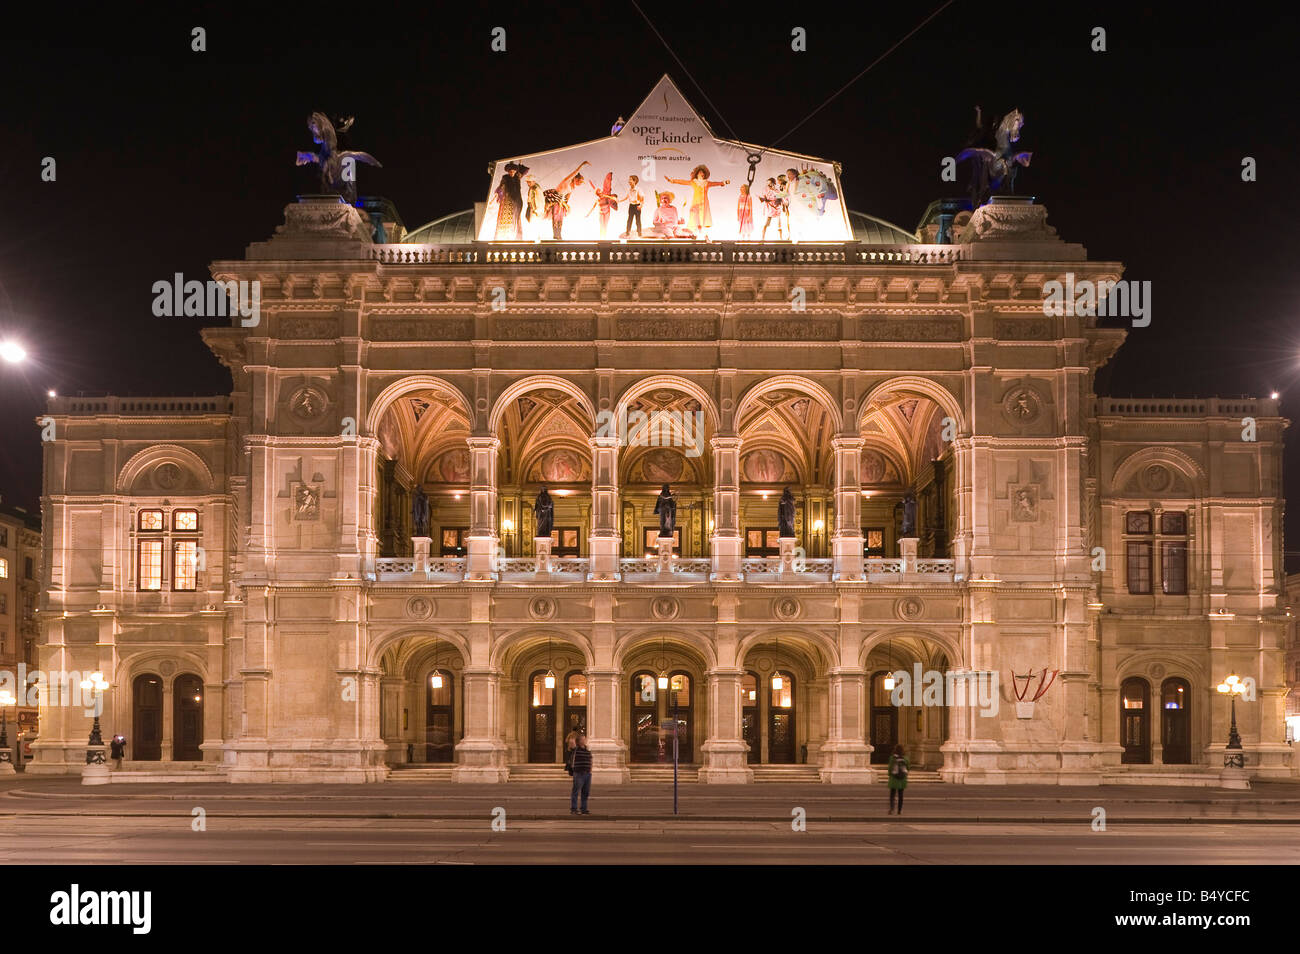 Wien Staatsoper August Sicard von Sicardsburg und Eduard van der Nüll 1869  Vienna State Opera Stock Photo - Alamy